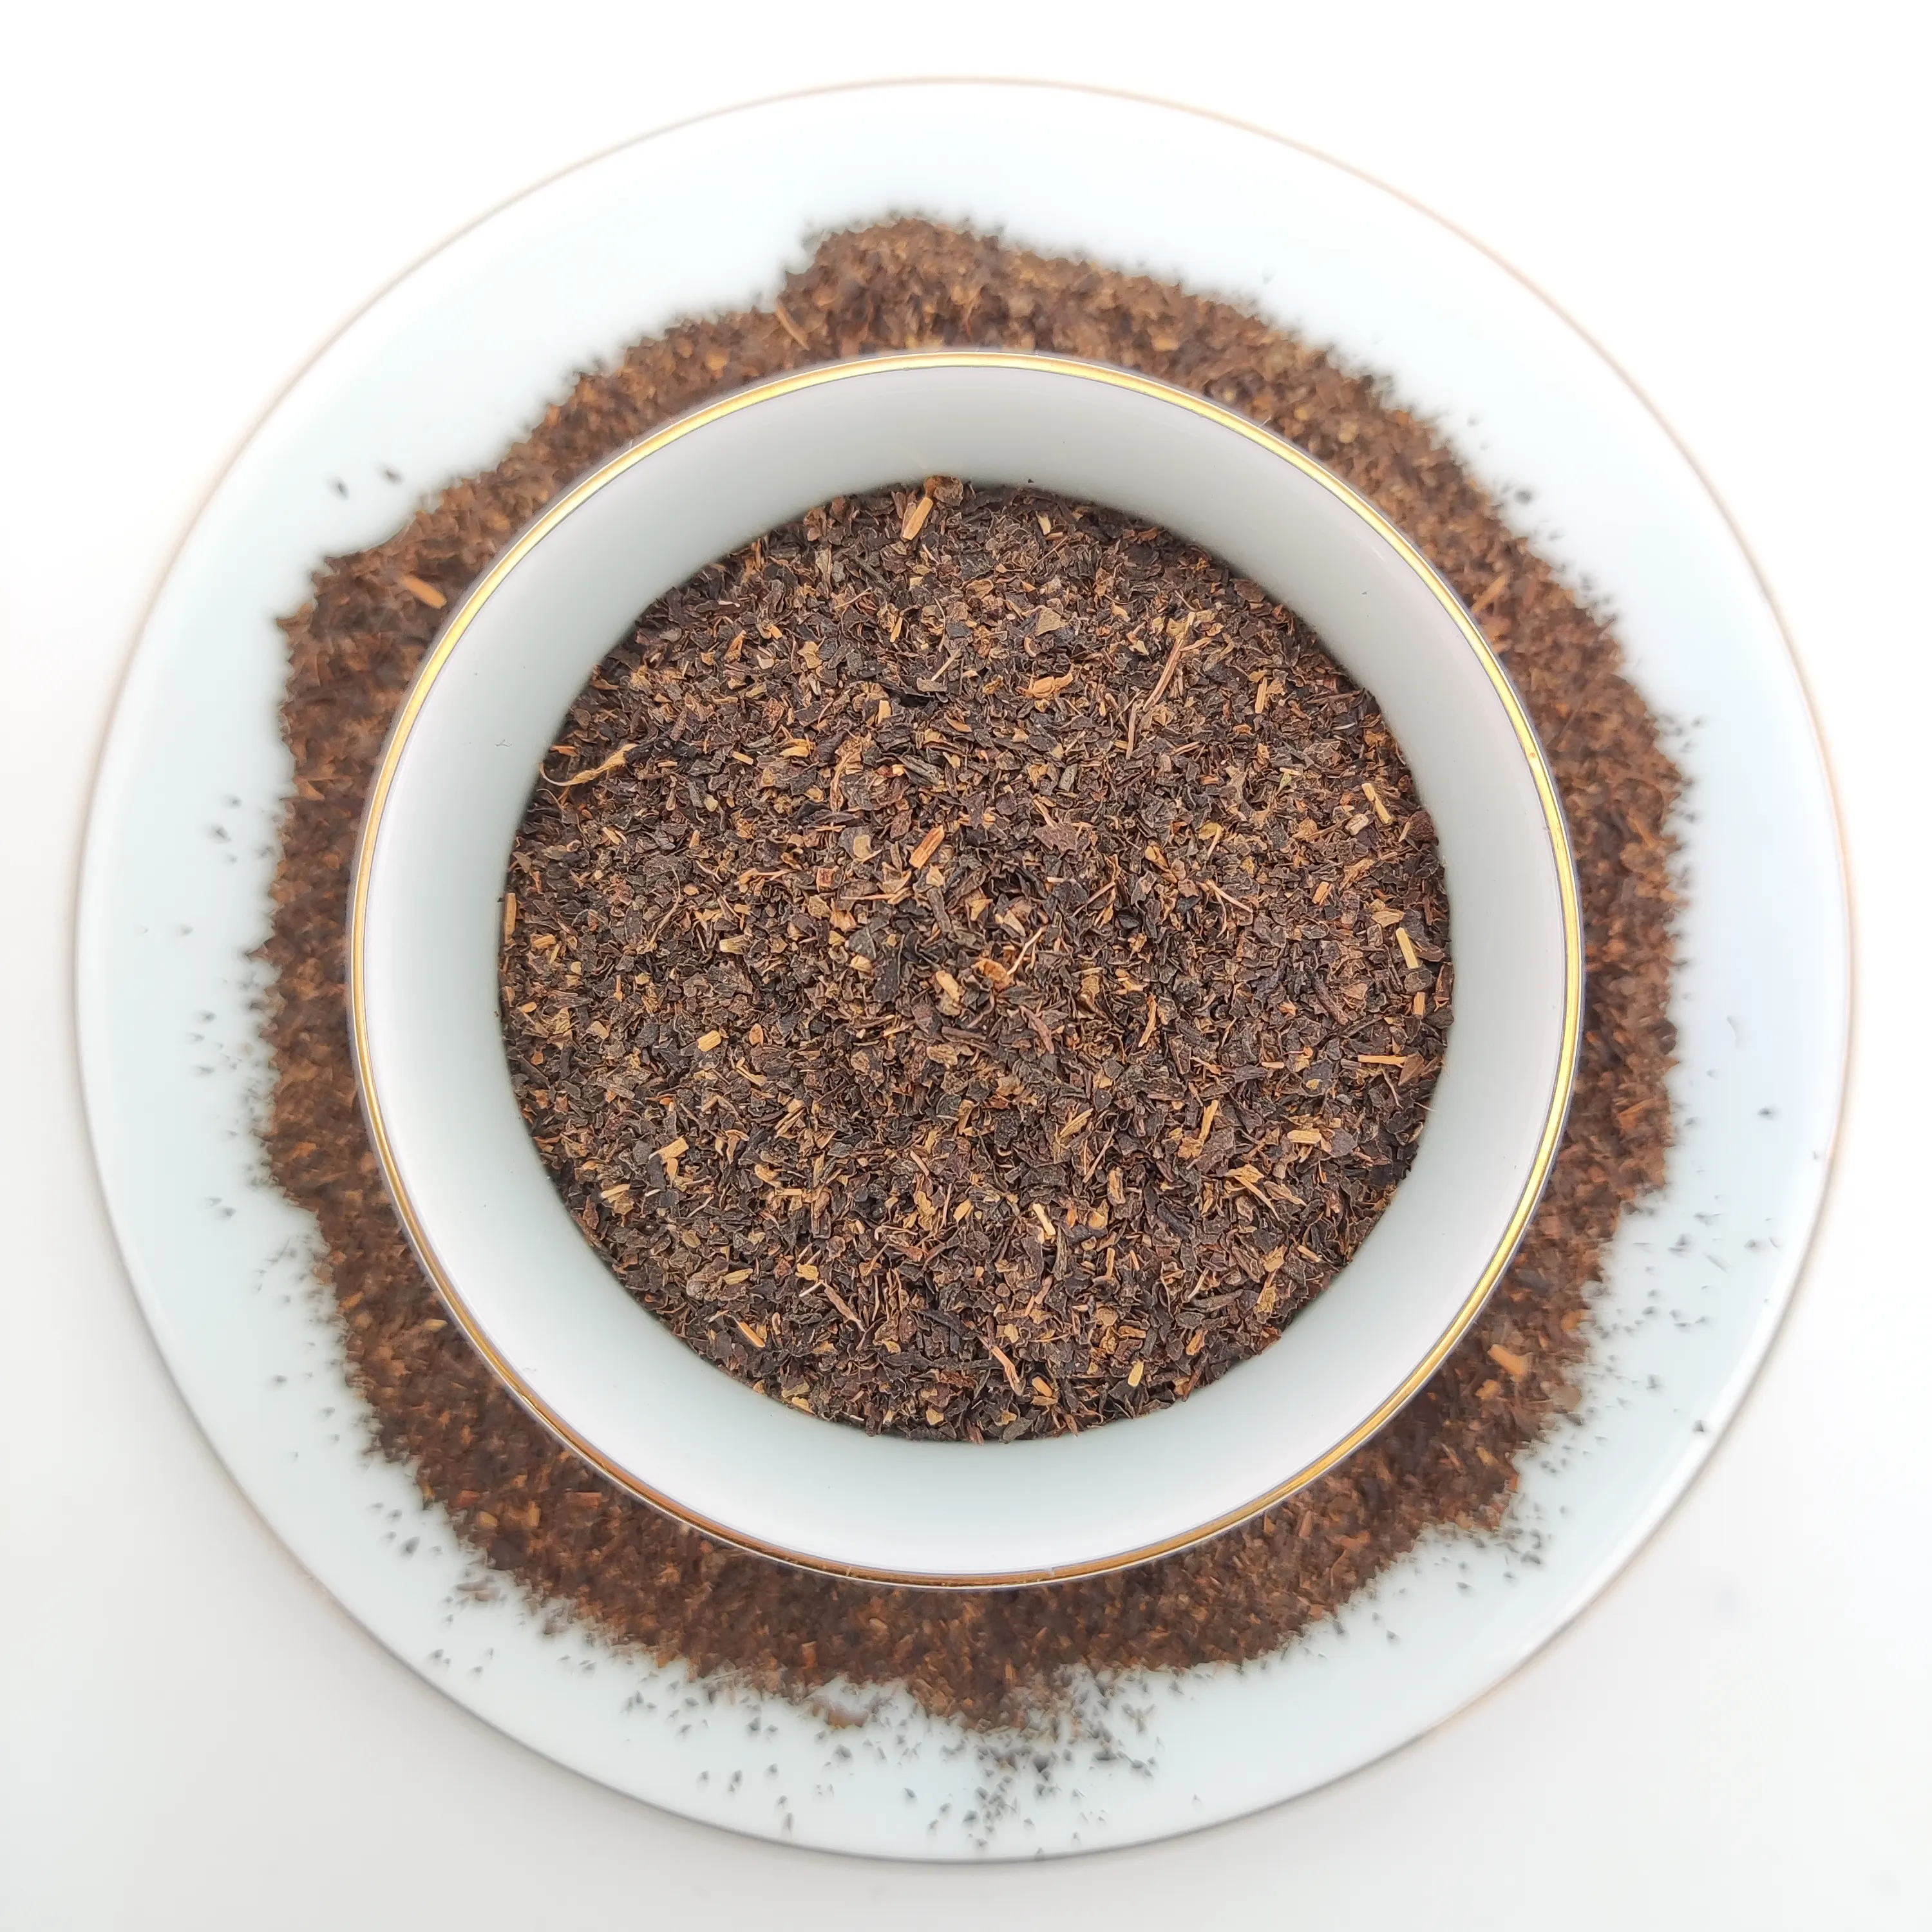 Preço competitivo e alta qualidade chá preto orgânico CTC chá preto pó chá no uso diário